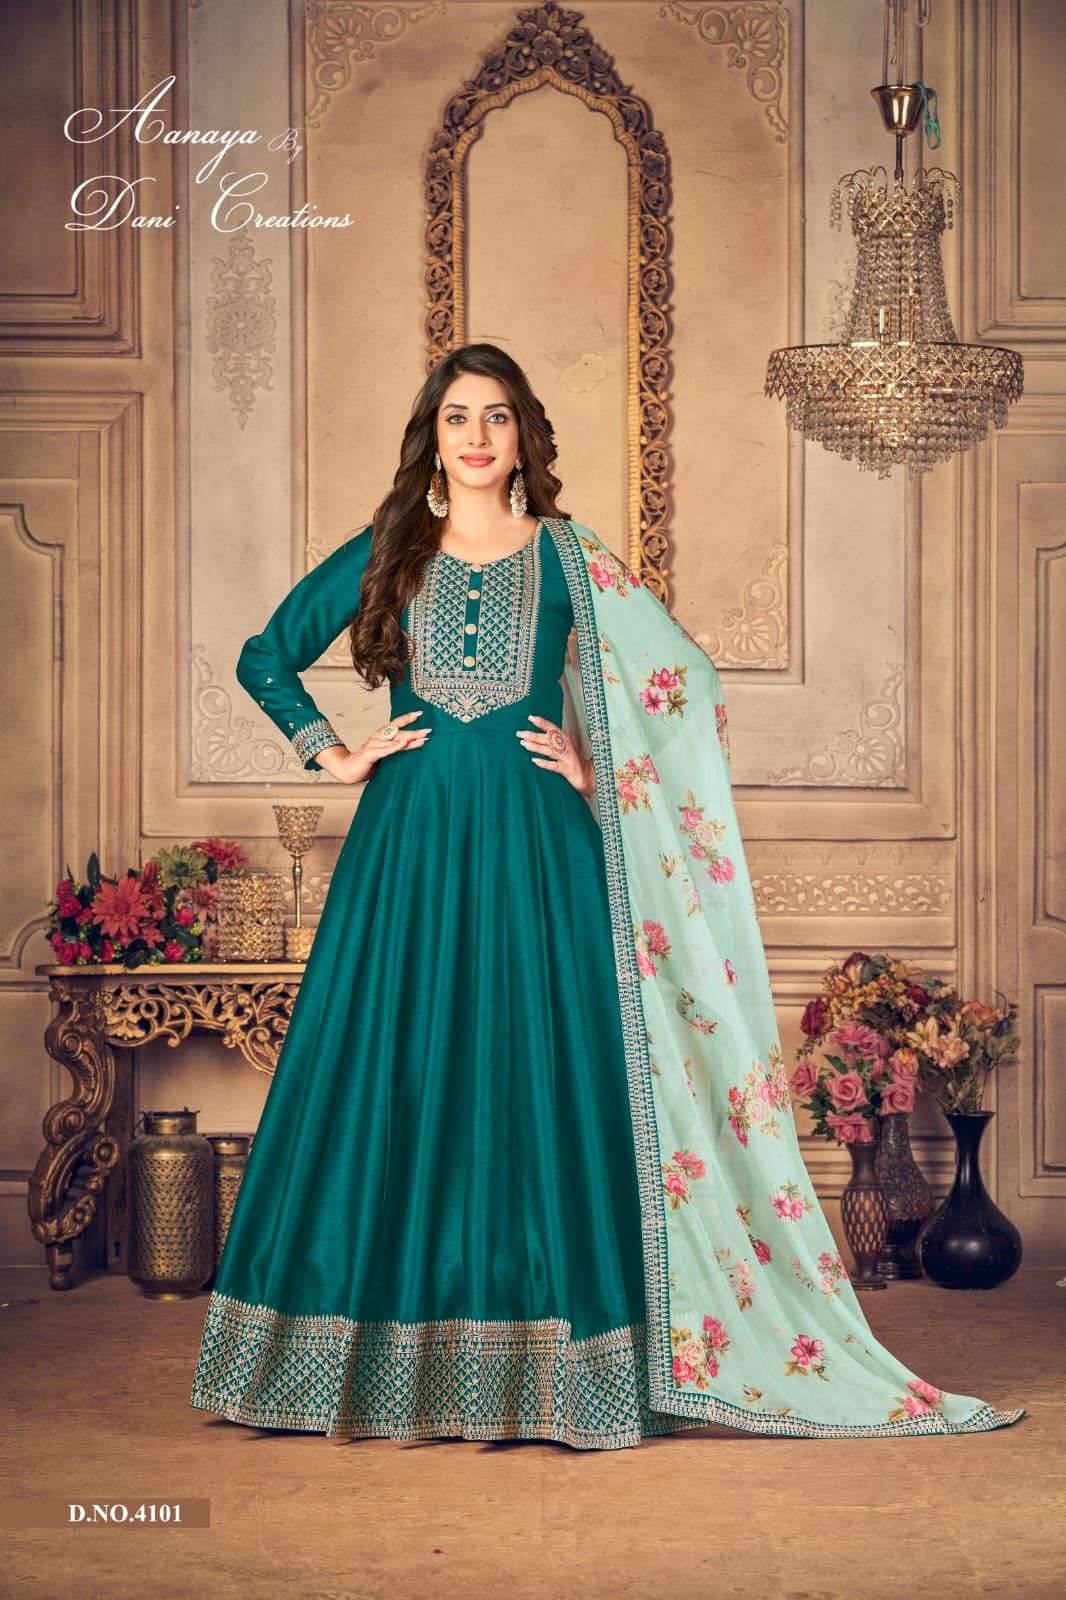 Aanaya Vol 141 Designer Anarkali Dress Collection at best Rate